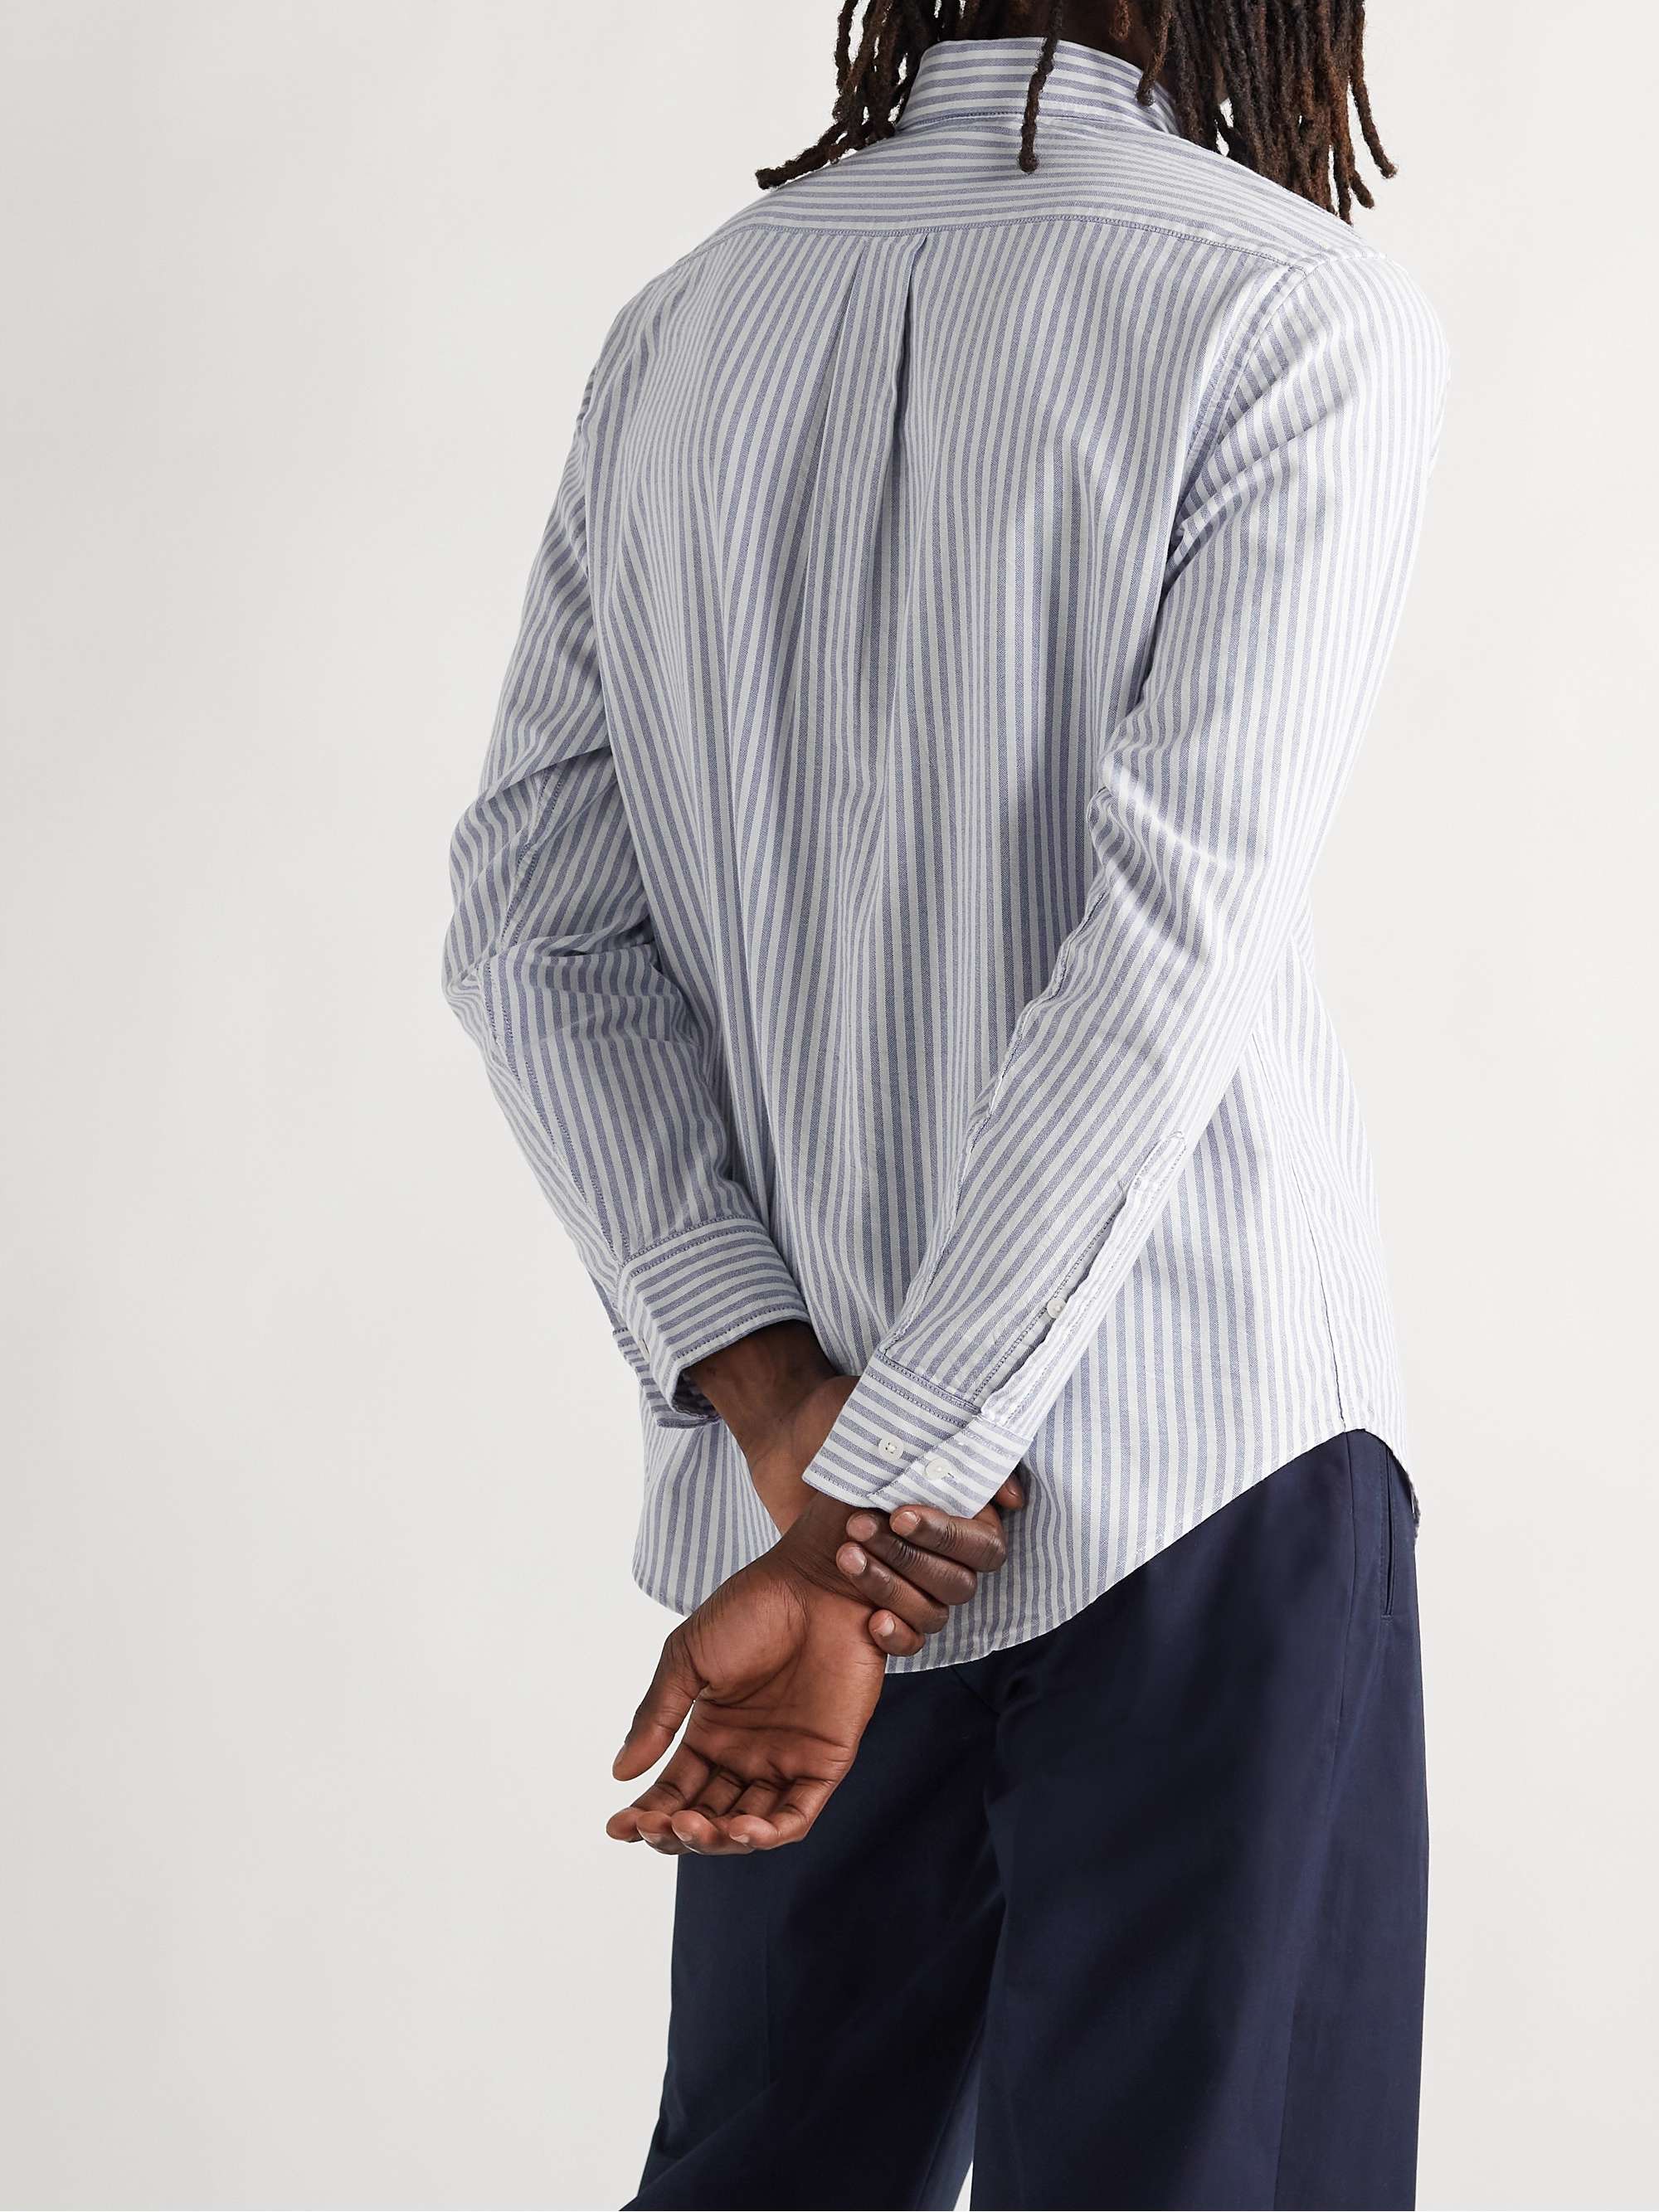 NN07 Levon Button-Down Collar Striped Cotton Oxford Shirt